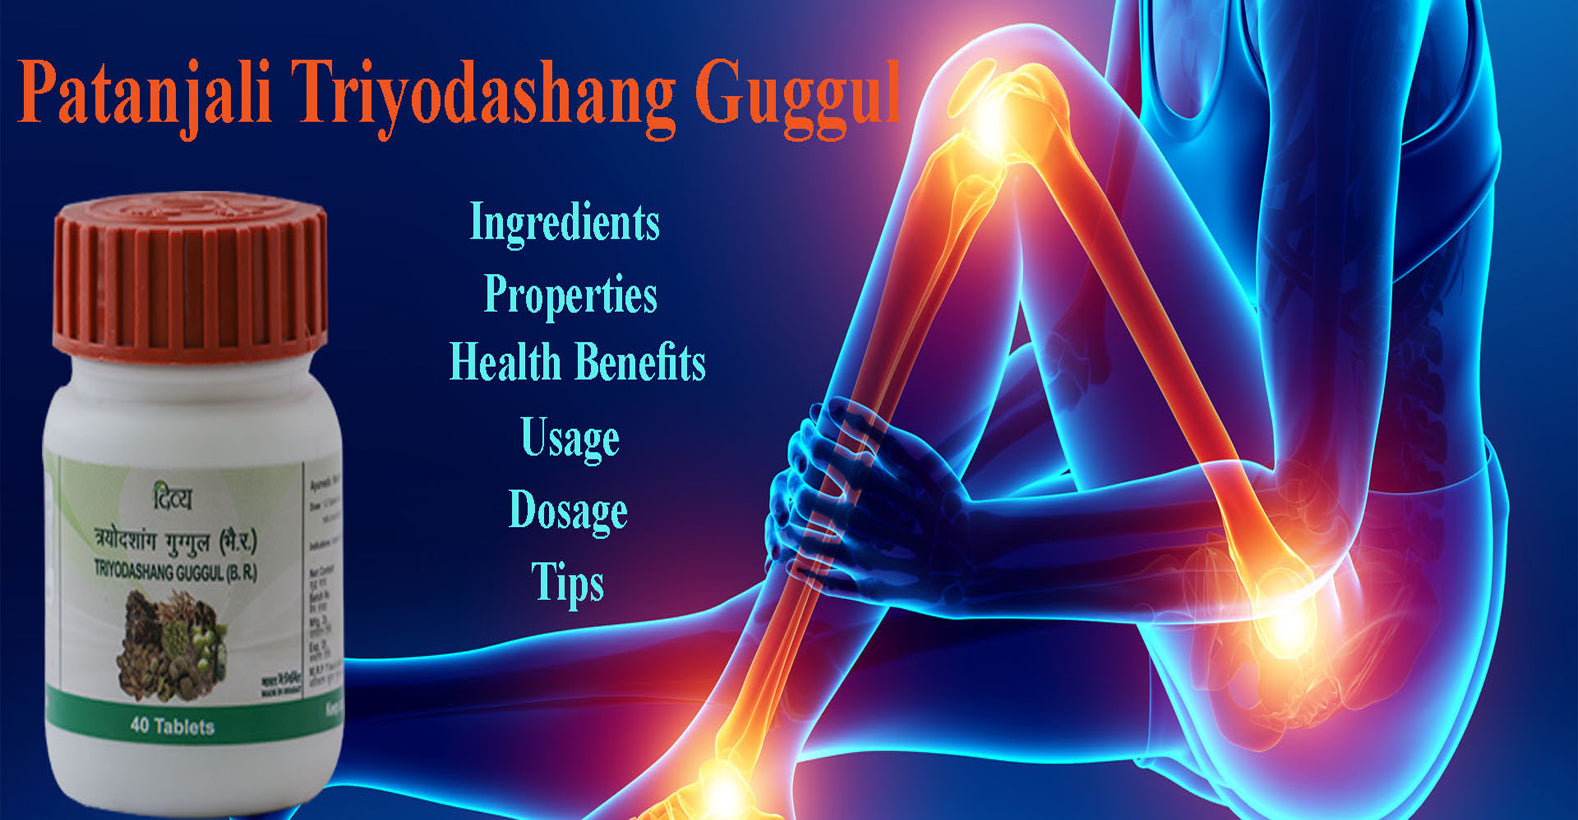 Patanjali Triyodashang Guggul - Ingredients, Properties, Health Benefits, Usage, Dosage, Tips